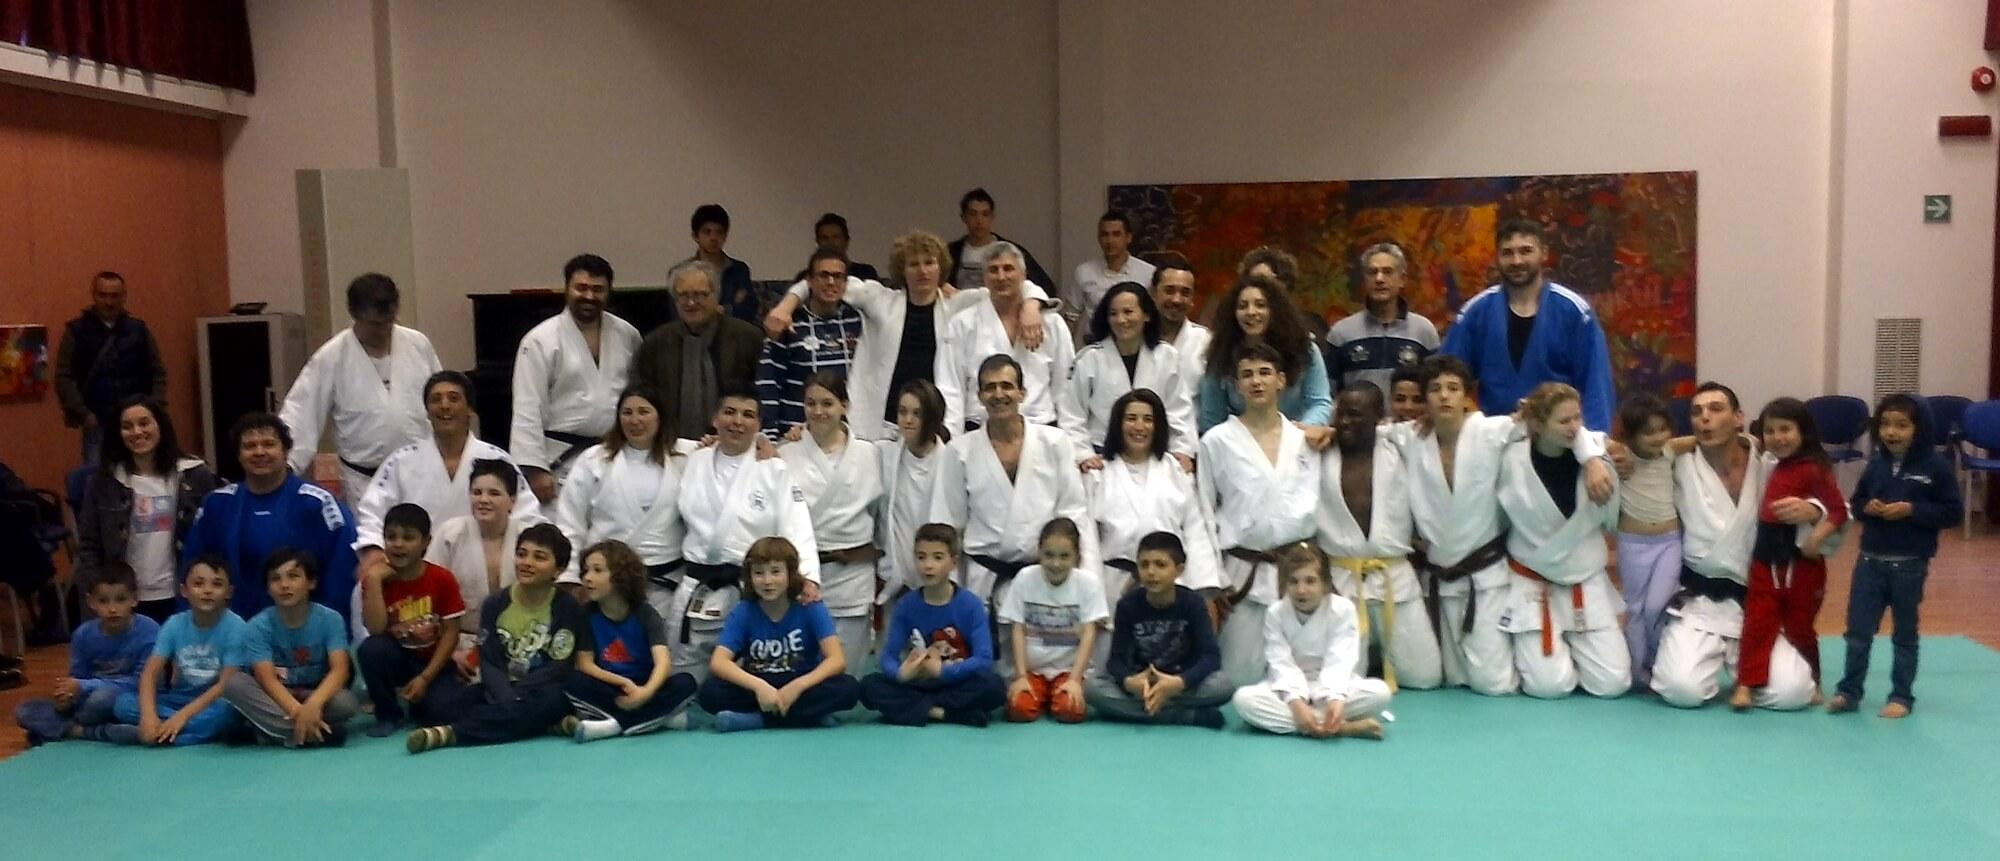 Giannico-judo